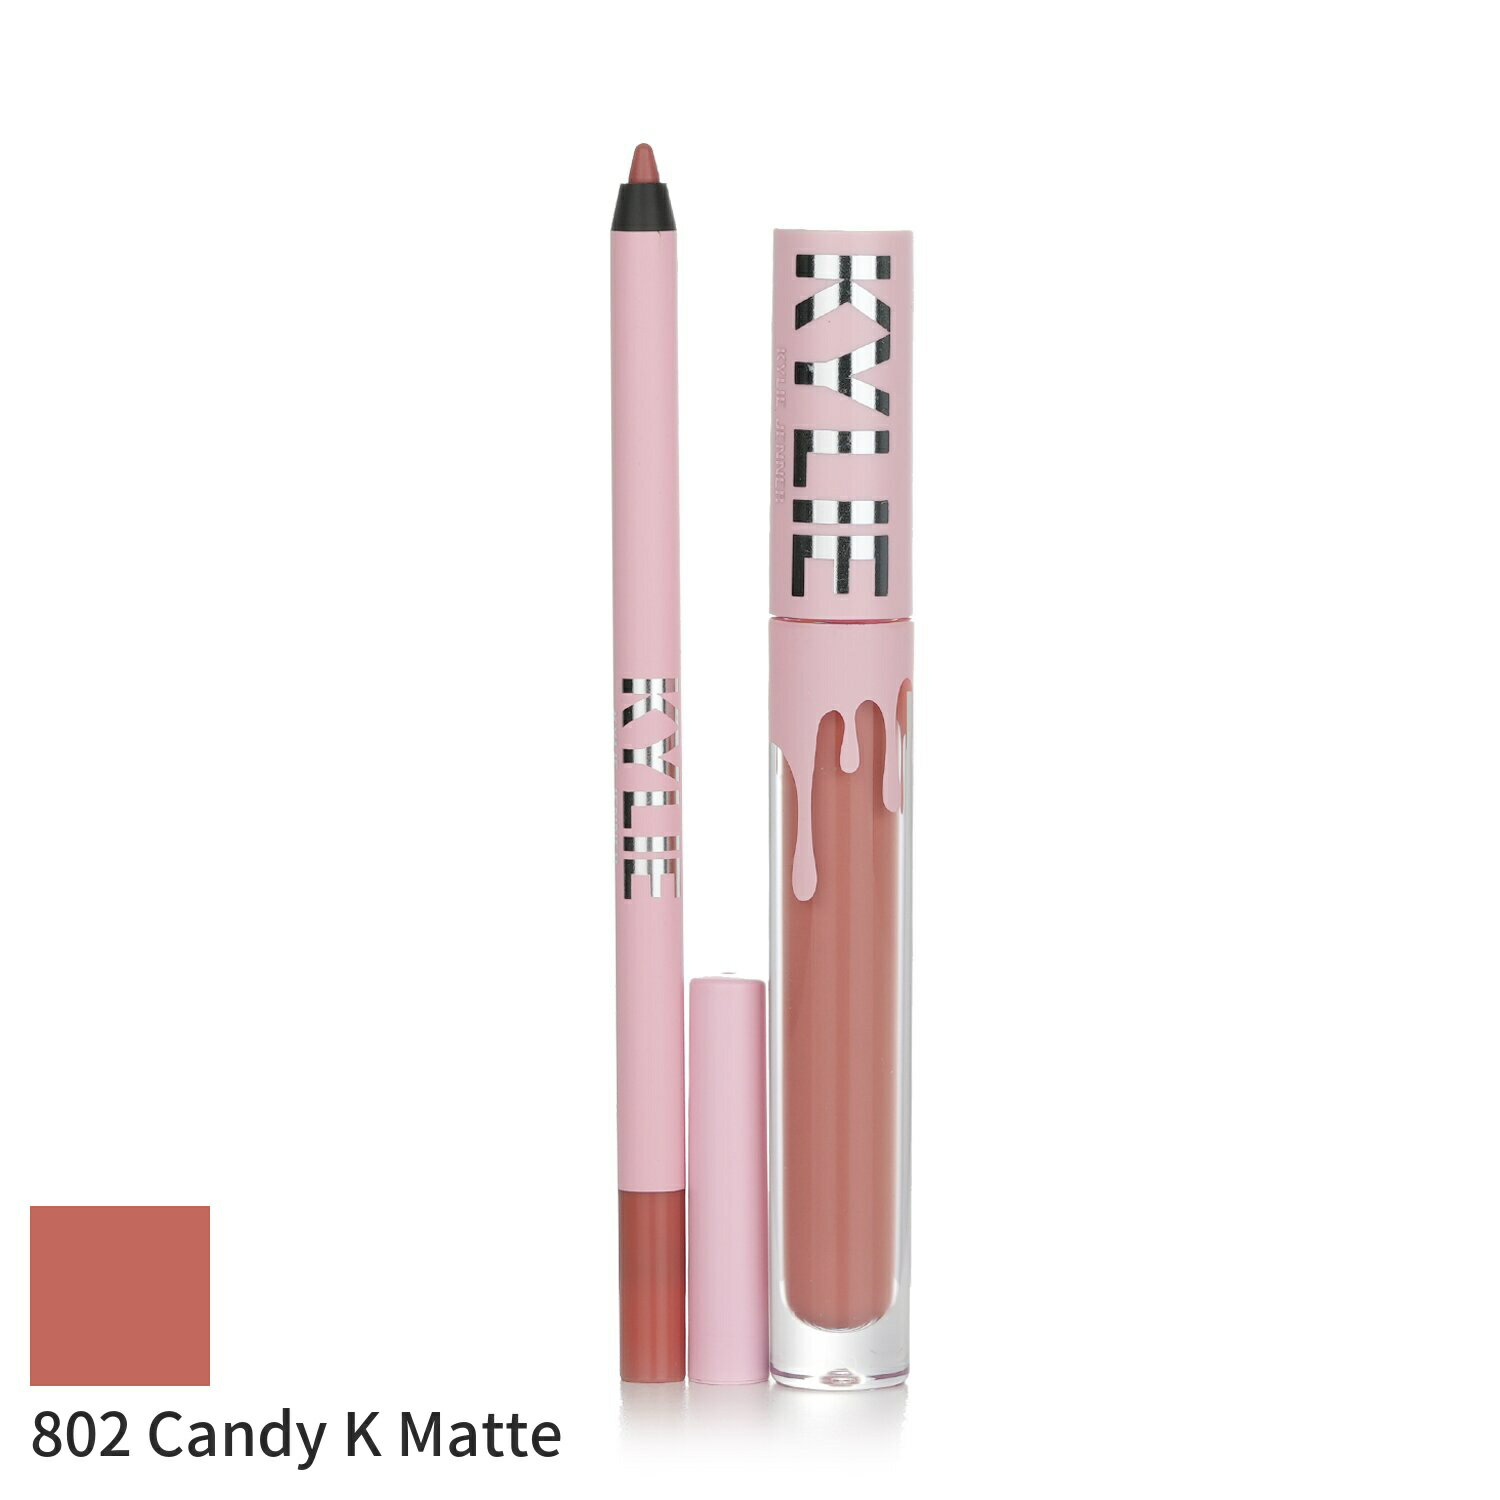 お得な「メイクセット＆コフレ」はこちら【新着コスメ】はこちらブランドKylie By Kylie Jennerカイリー・バイ・カイリー・ジェンナー商品名Matte Lip Kit: Matte Liquid Lipstick 3ml + Lip Liner 1.1g - # 802 Candy K MatteMatte Lip Kit: Matte Liquid Lipstick 3ml + Lip Liner 1.1g - # 802 Candy K Matte商品説明商品区分化粧品（海外製）内容量2pcs原産国アメリカ輸入者本商品は個人輸入商品のため、購入者の方が輸入者となります。広告文責株式会社 via Design050-3189-0333品番278796BEAUTY LOVER 海外コスメ 楽天市場店海外コスメのビューティラバー。お得に楽しく美しく！人気の海外ブランドから定番まで、800以上のブランド取り扱い。20,000点以上のお求め安いアイテムを取揃える世界最大級のビューティー専門店。日本未上陸・限定商品など、おすすめのトレンドをおさえた、ランキング上位の人気アイテム多数。★ 大人の願いとお悩みをサポート年齢を重ねてもずっとキレイでいたい、毎日の美容と健康をサポートする、高品質でおしゃれなケアアイテムがきっと見つかります。20代、30代、40代、50代、60代、どの年代にもぴったりのセレクションです。★ 大切な女性（妻、嫁、彼女）へのプレゼントに誕生日プレゼント、クリスマス、ホワイトデー、母の日のギフトに仲良しな女友達へのサプライズギフトに結婚祝い、成人祝い、就職祝いなどの記念の贈り物におすすめ＊当店でご購入された商品は、原則として、「個人輸入」としての取り扱いになり、全て香港からお客様のもとへ直送されます。＊個人輸入される商品は、すべてご注文者自身の「個人使用・個人消費」が前提となりますので、ご注文された商品を第三者へ譲渡・転売することは法律で禁止されております。＊ご購入品は「個人輸入」となり、企業名及び住所への発送はできません。個人名、個人宅への発送となります。カイリーバイカイリージェンナー コフレ で探すコフレ で探すカイリーバイカイリージェンナー で探すブランドKylie By Kylie Jennerカイリー・バイ・カイリー・ジェンナー商品名Matte Lip Kit: Matte Liquid Lipstick 3ml + Lip Liner 1.1g - # 802 Candy K MatteMatte Lip Kit: Matte Liquid Lipstick 3ml + Lip Liner 1.1g - # 802 Candy K Matte商品説明商品区分化粧品（海外製）内容量2pcs原産国アメリカ輸入者本商品は個人輸入商品のため、購入者の方が輸入者となります。広告文責株式会社 via Design050-3189-0333品番278796